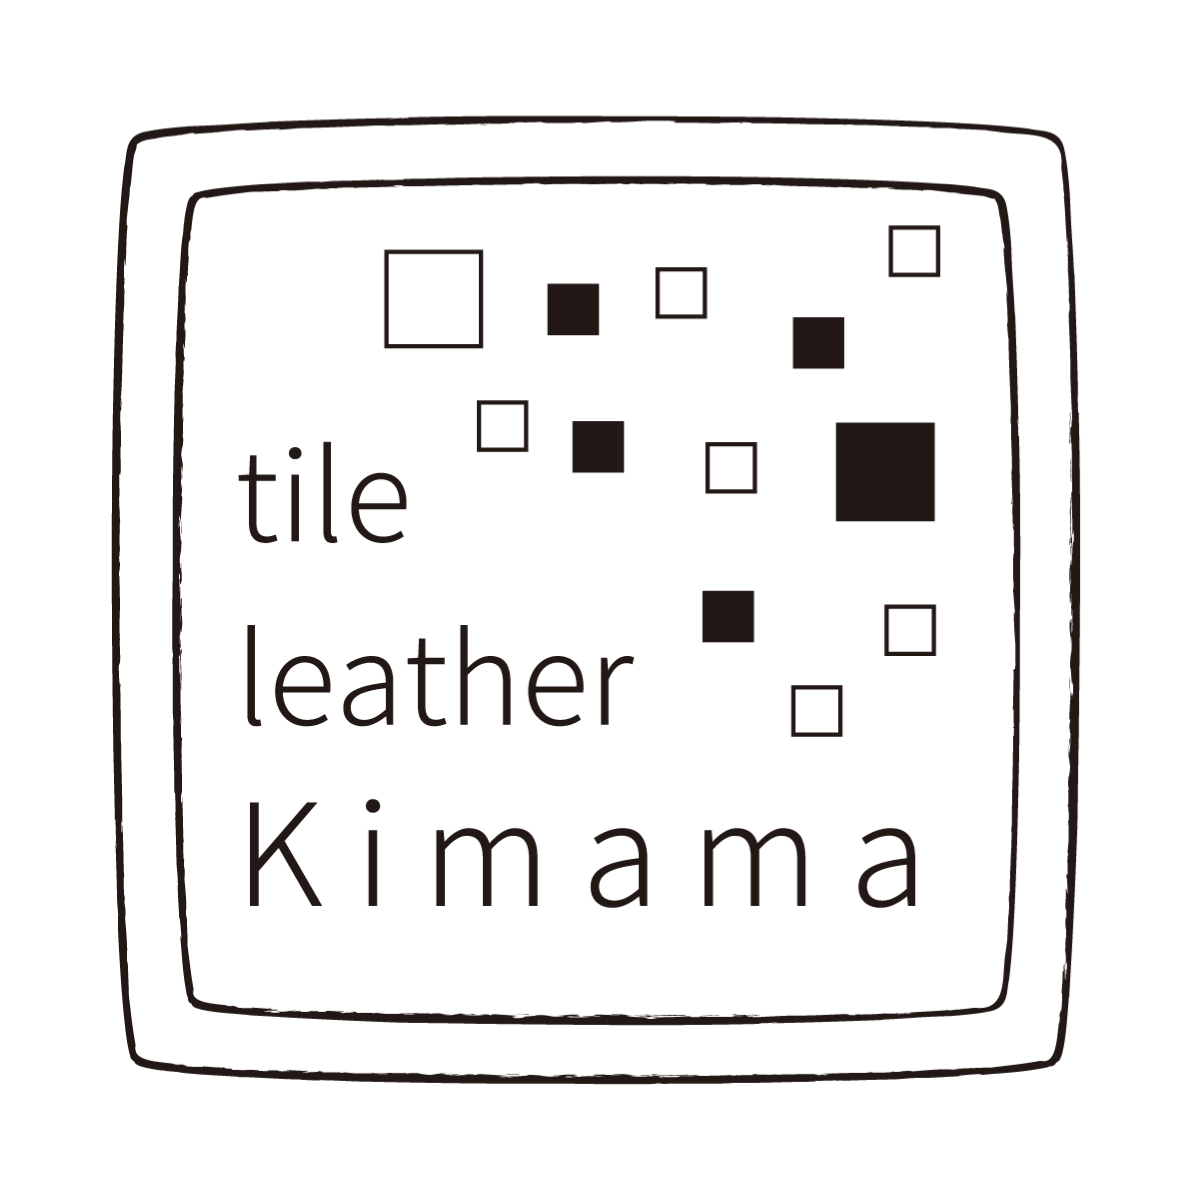 tile leather Kimama